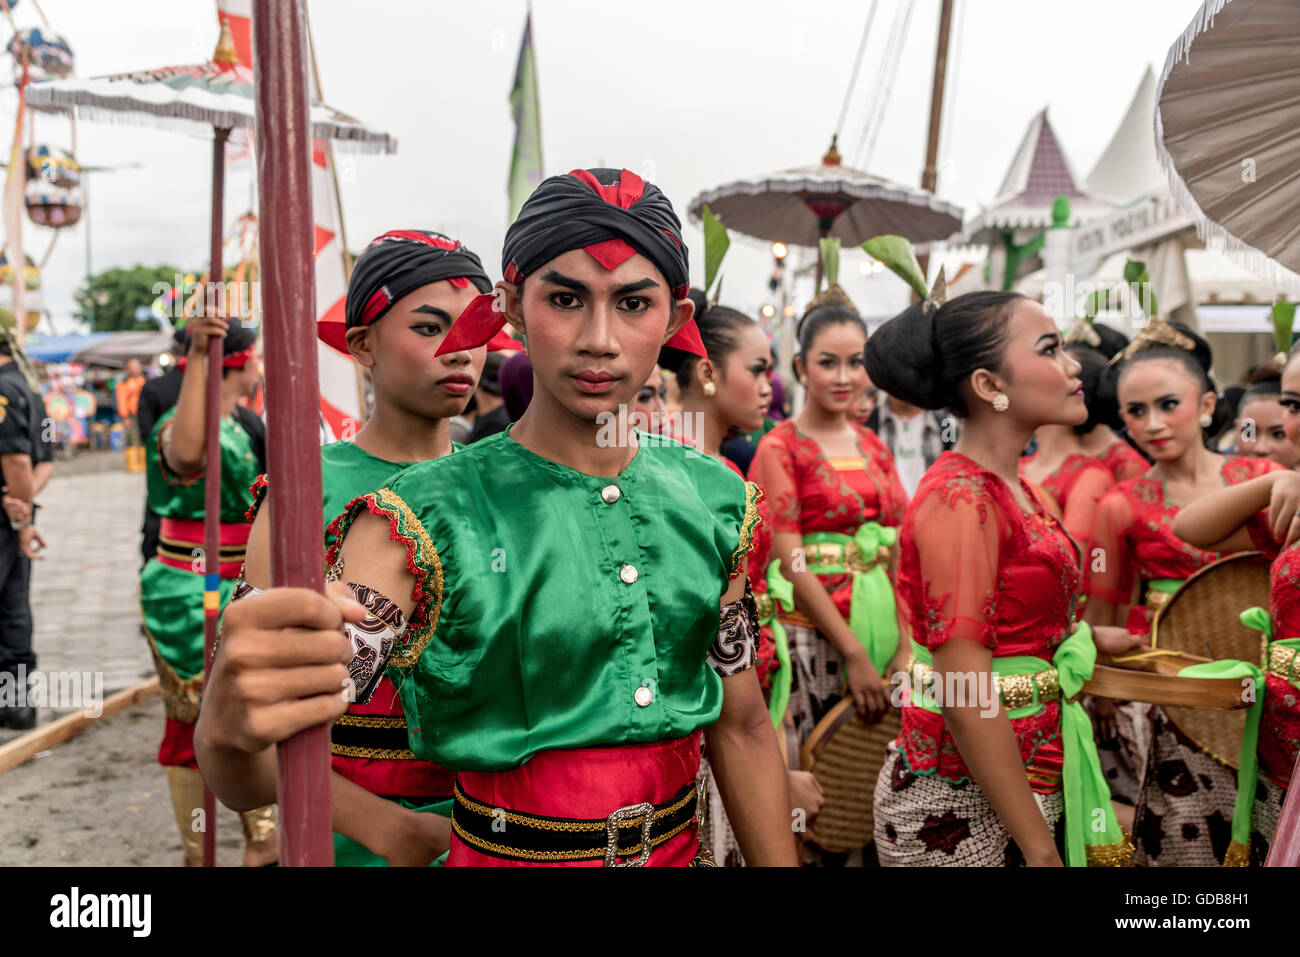 Traditionell gekleidete Tänzer bei einem Festival in Yogyakarta, Java, Indonesien, Asien Stockfoto